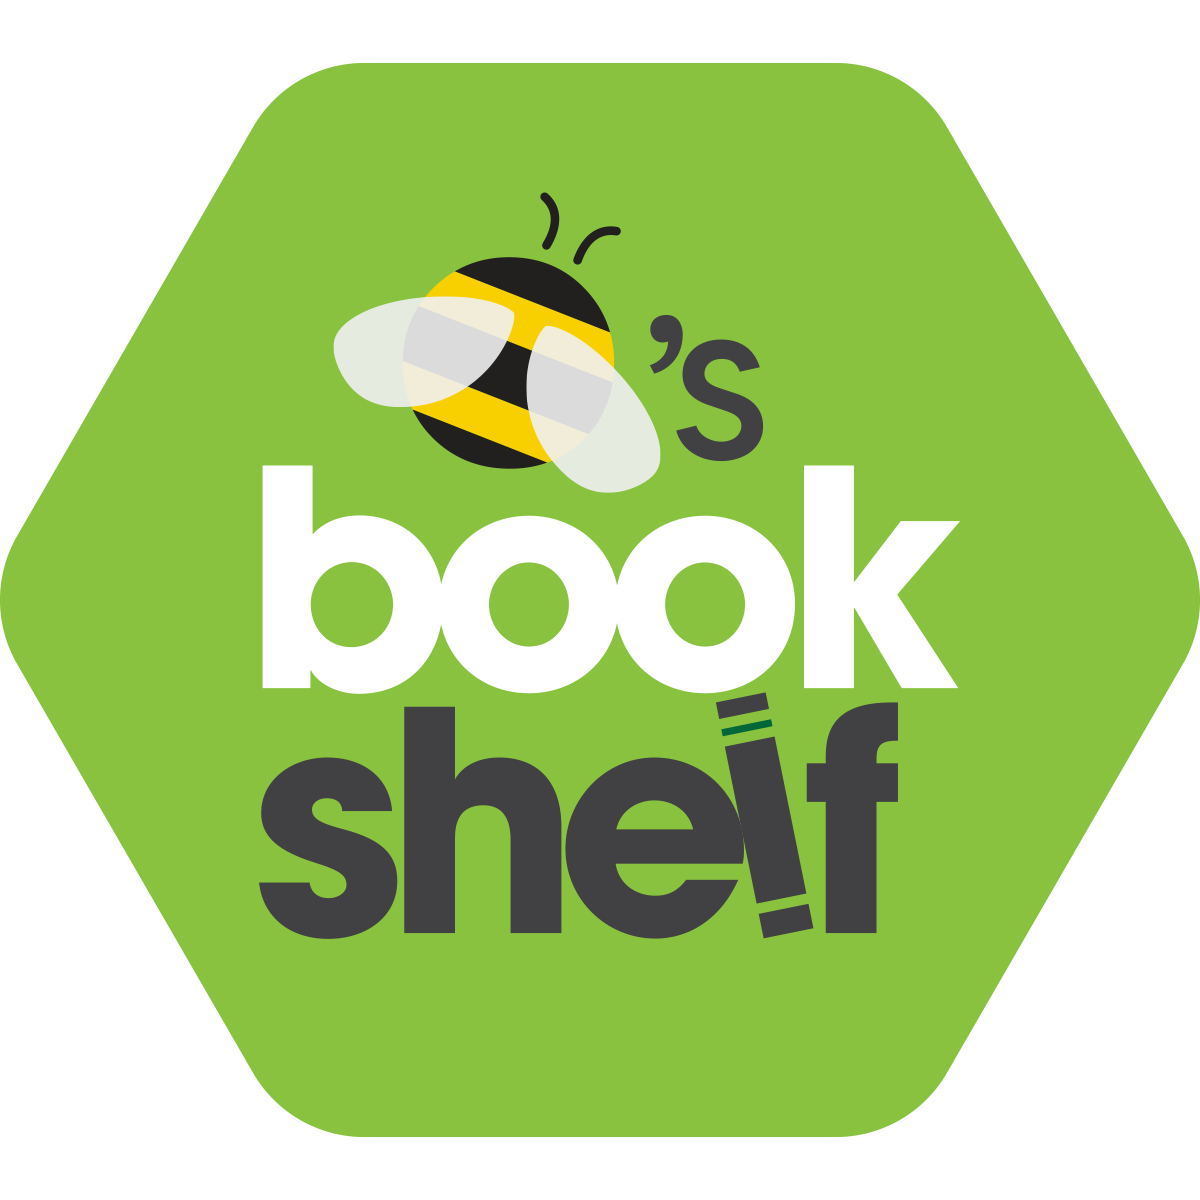 Bee's Bookshelf book club logo